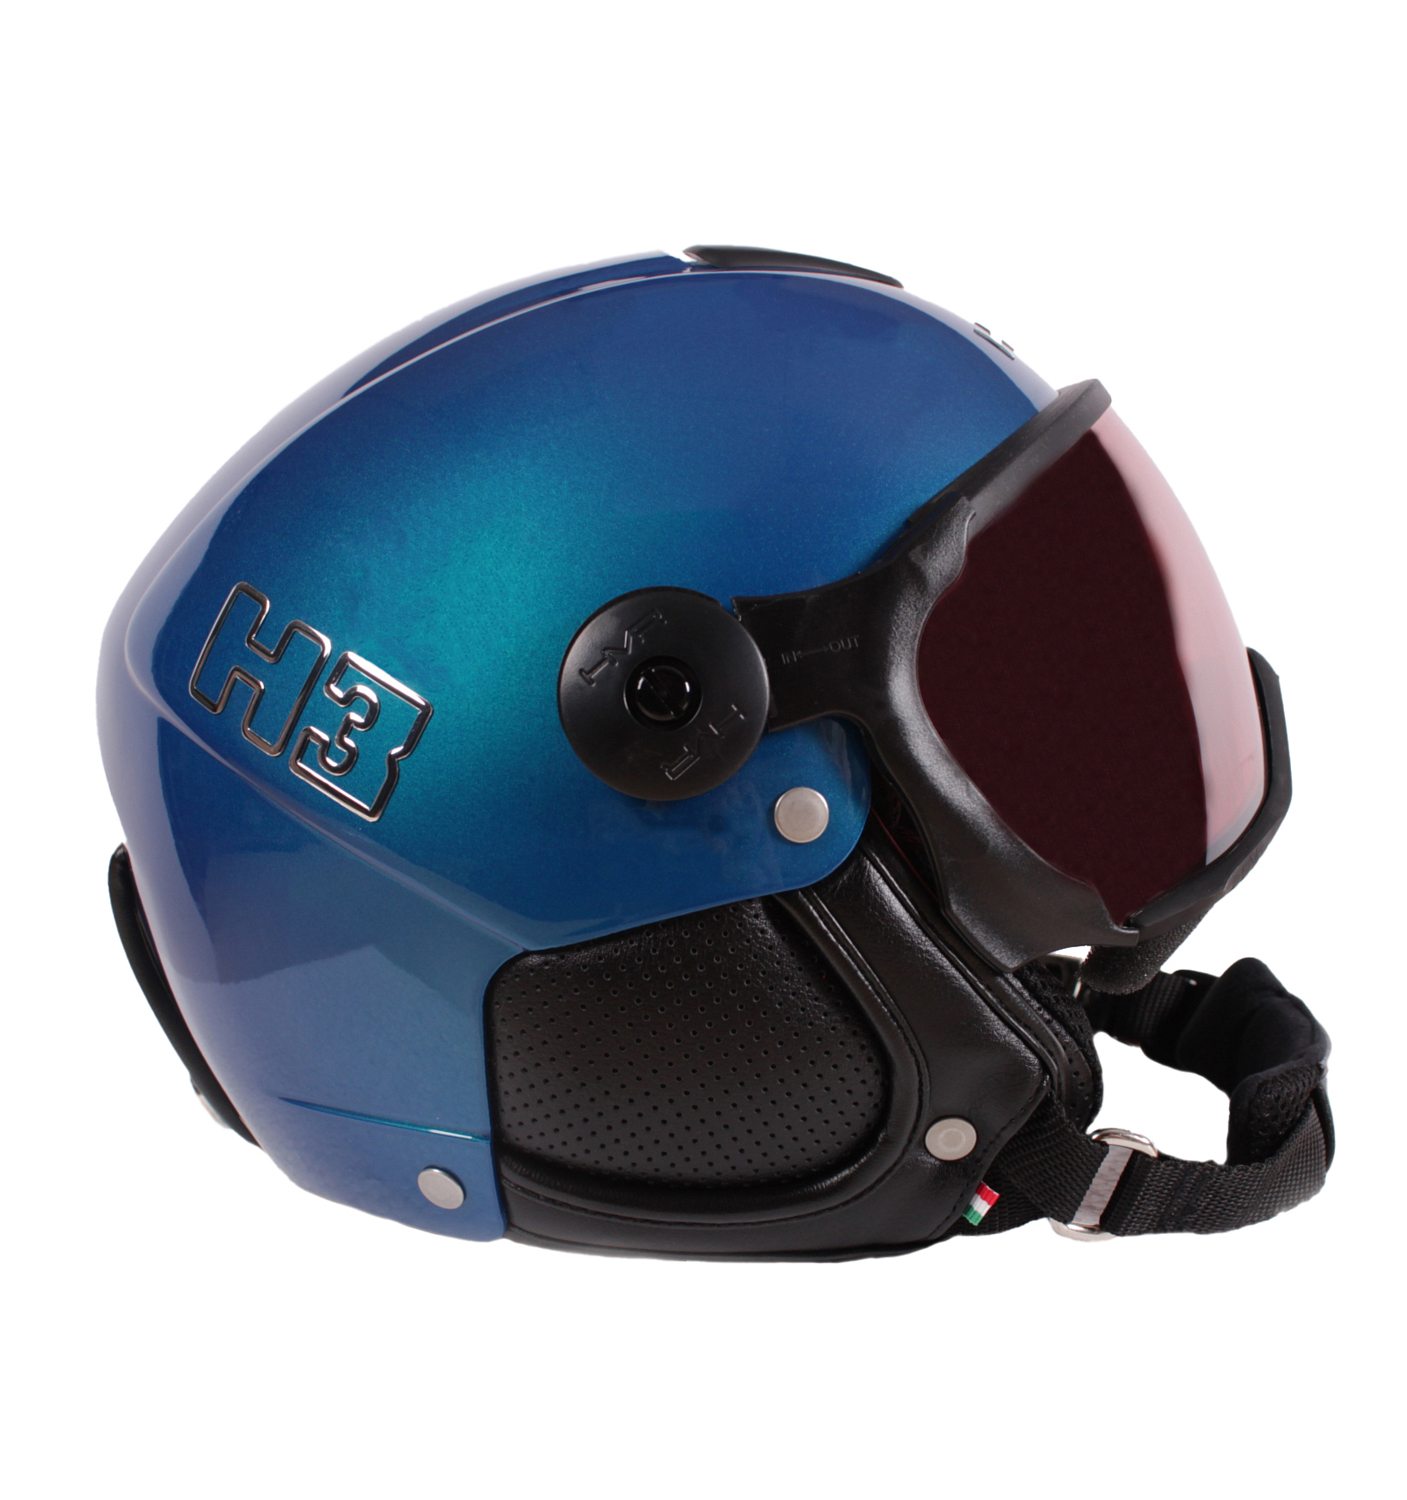 Шлем с визором HMR H3 Blu/Electtrico